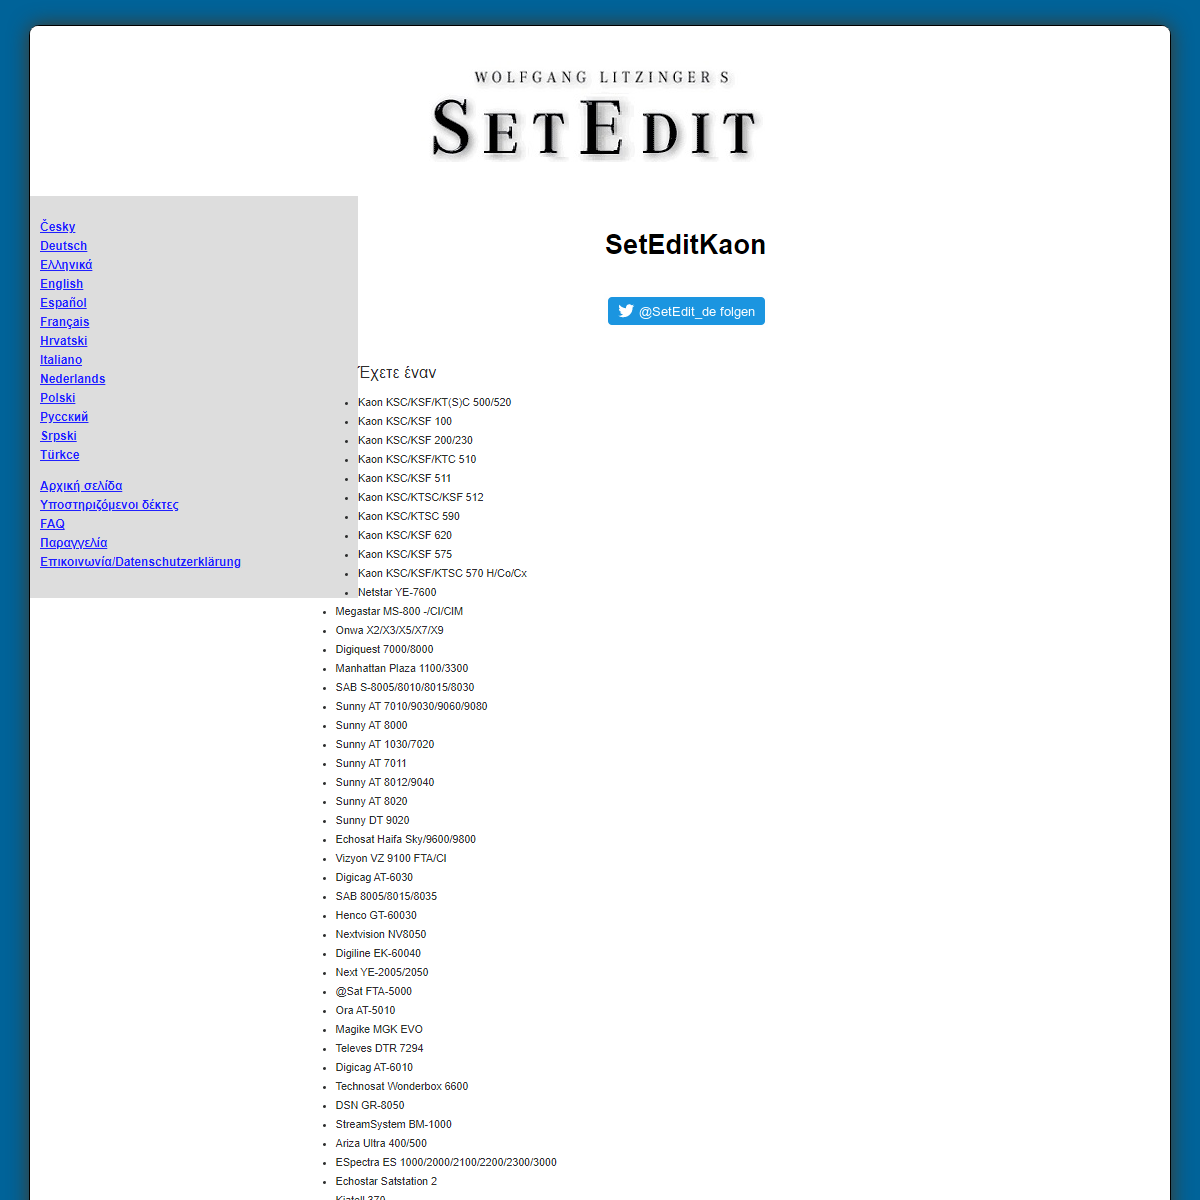 A complete backup of https://www.setedit.de/SetEdit.php?spr=11&Editor=18